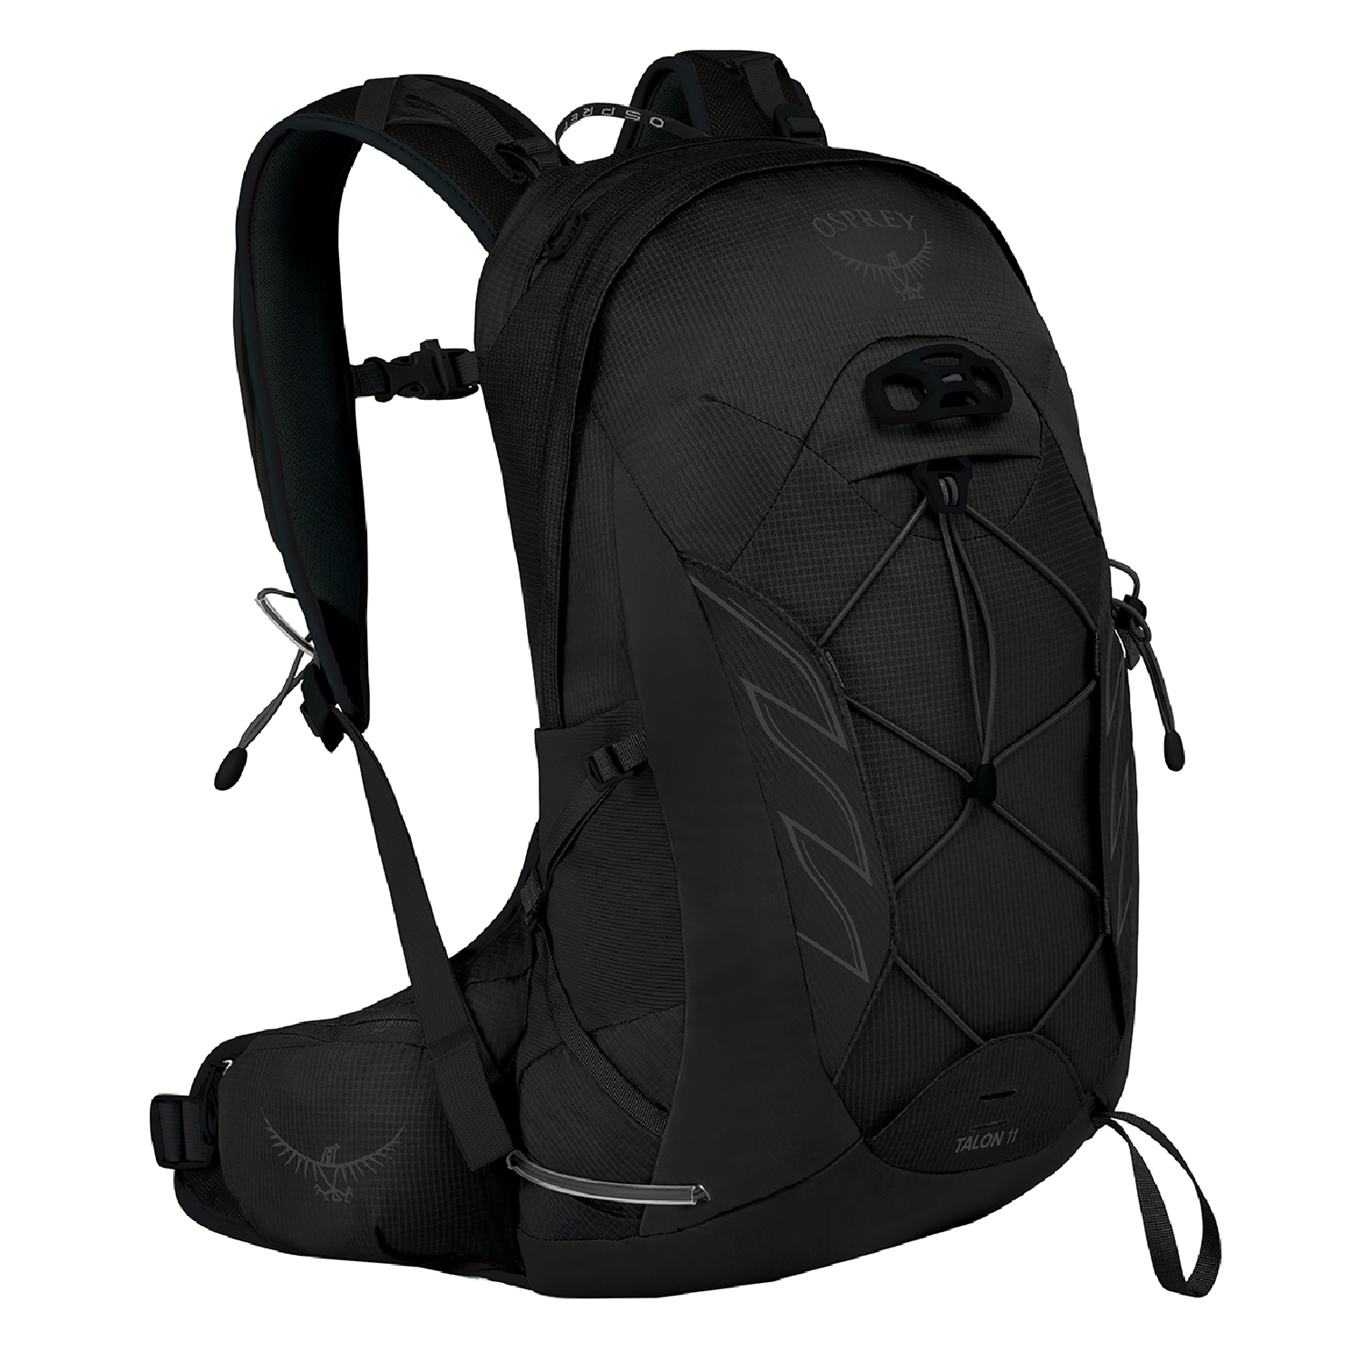 Osprey Talon 11 Backpack S/M stealth black backpack